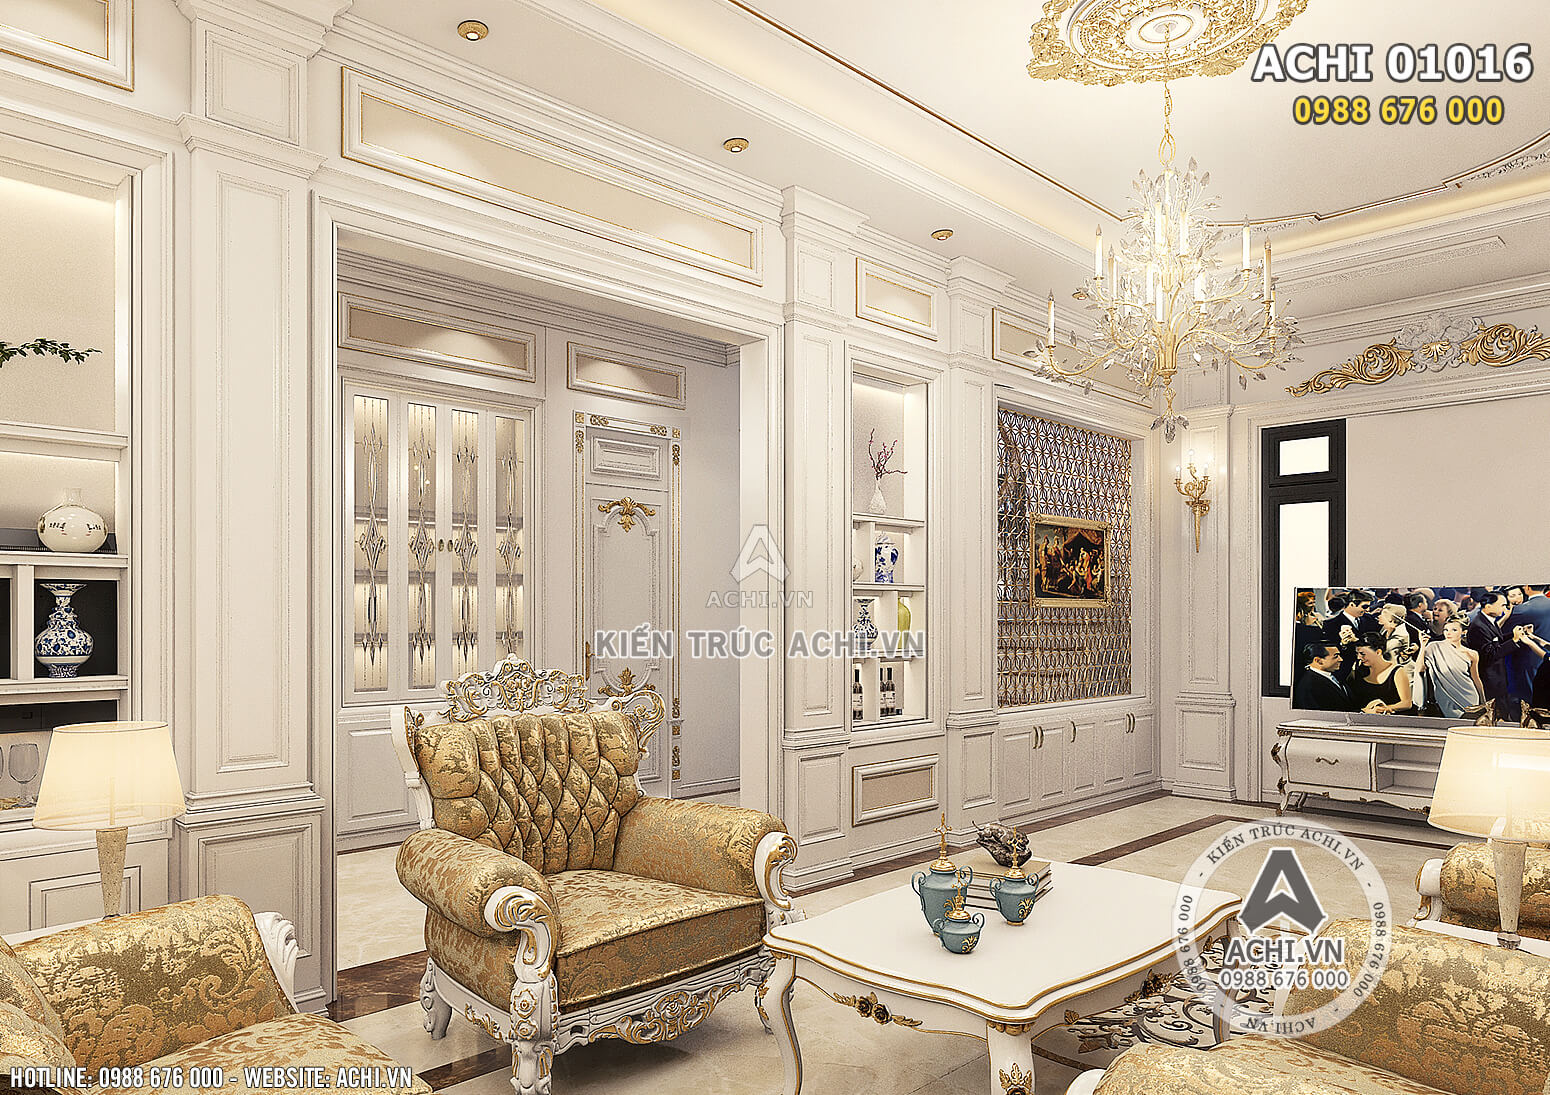 Hình ảnh: Thiết kế nội thất tân cổ điển cho không gian phòng khách - ACHI 01016